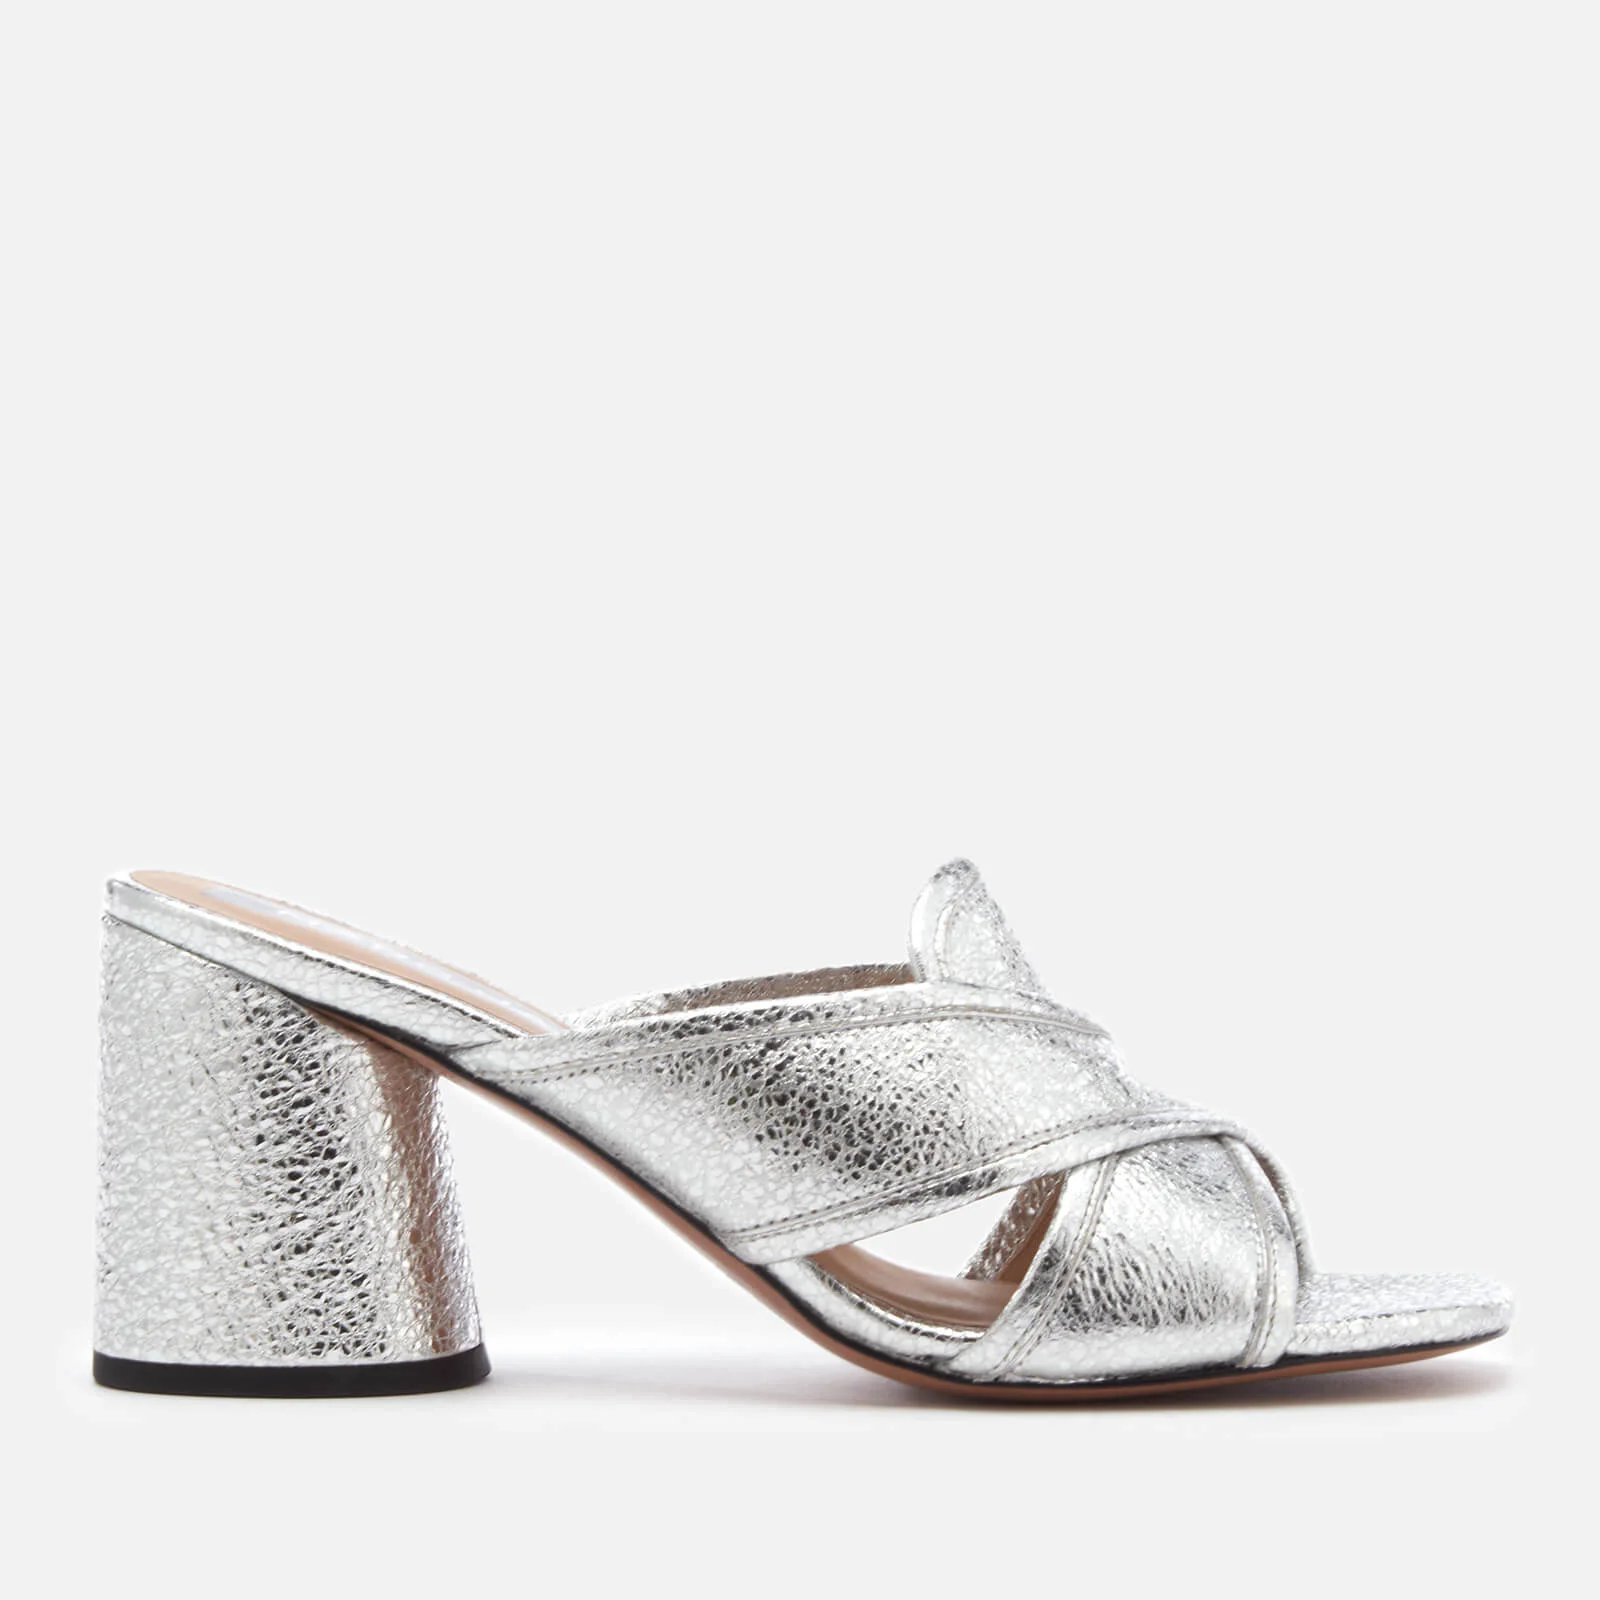 Marc Jacobs Women's Aurora Mule Sandals - Silver Image 1